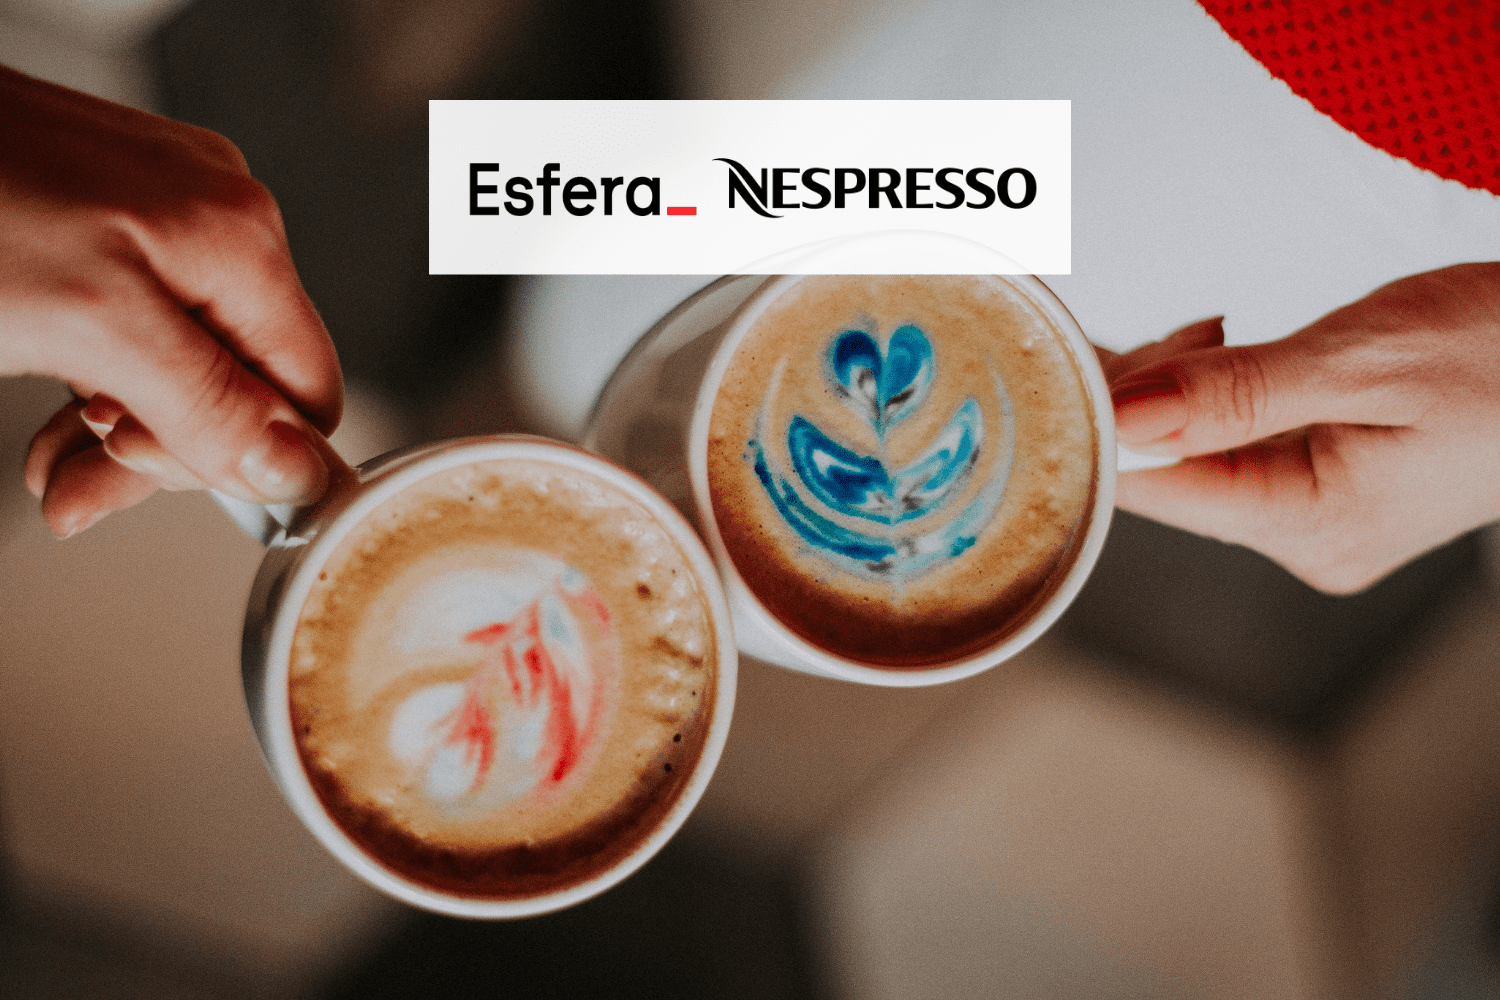 xícara com café expresso com logo Esfera e Nespresso 5 pontos Esfera